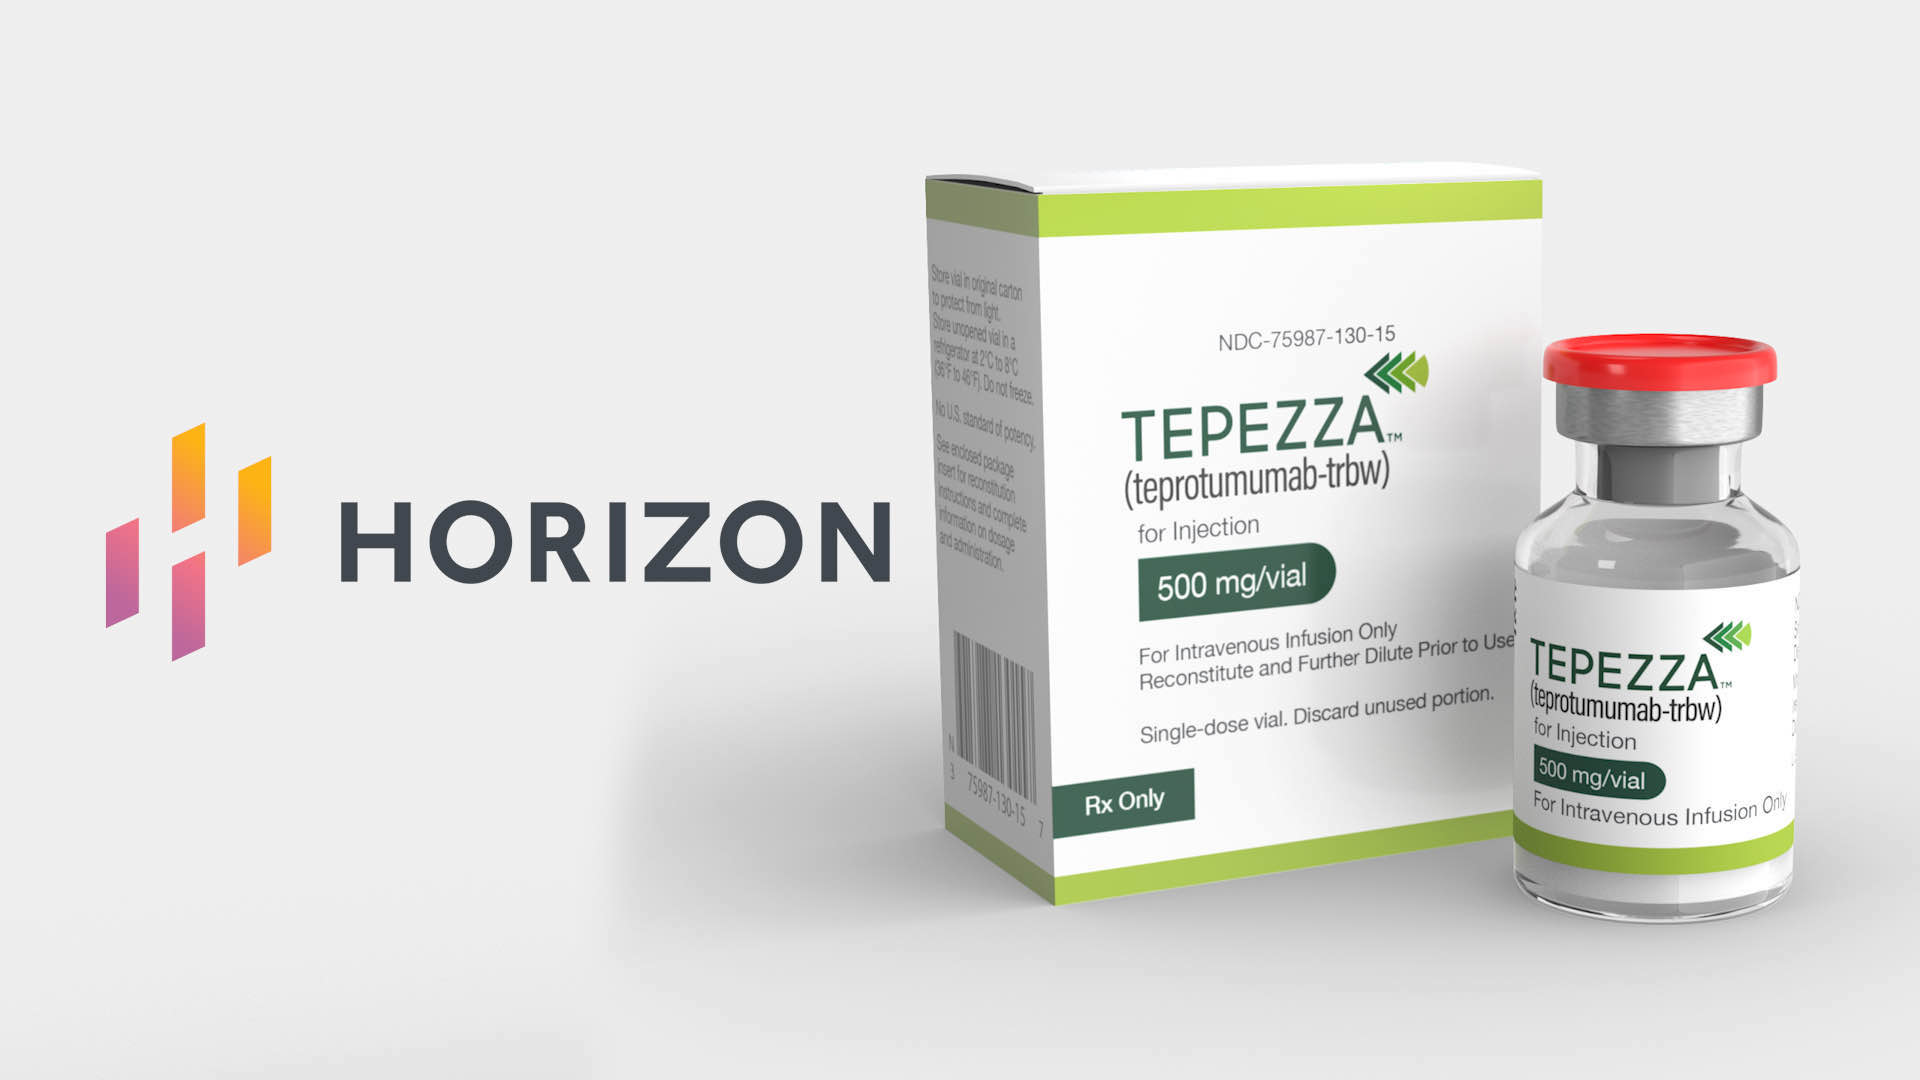 Tepezza（teprotumumab-trbw）注射剂